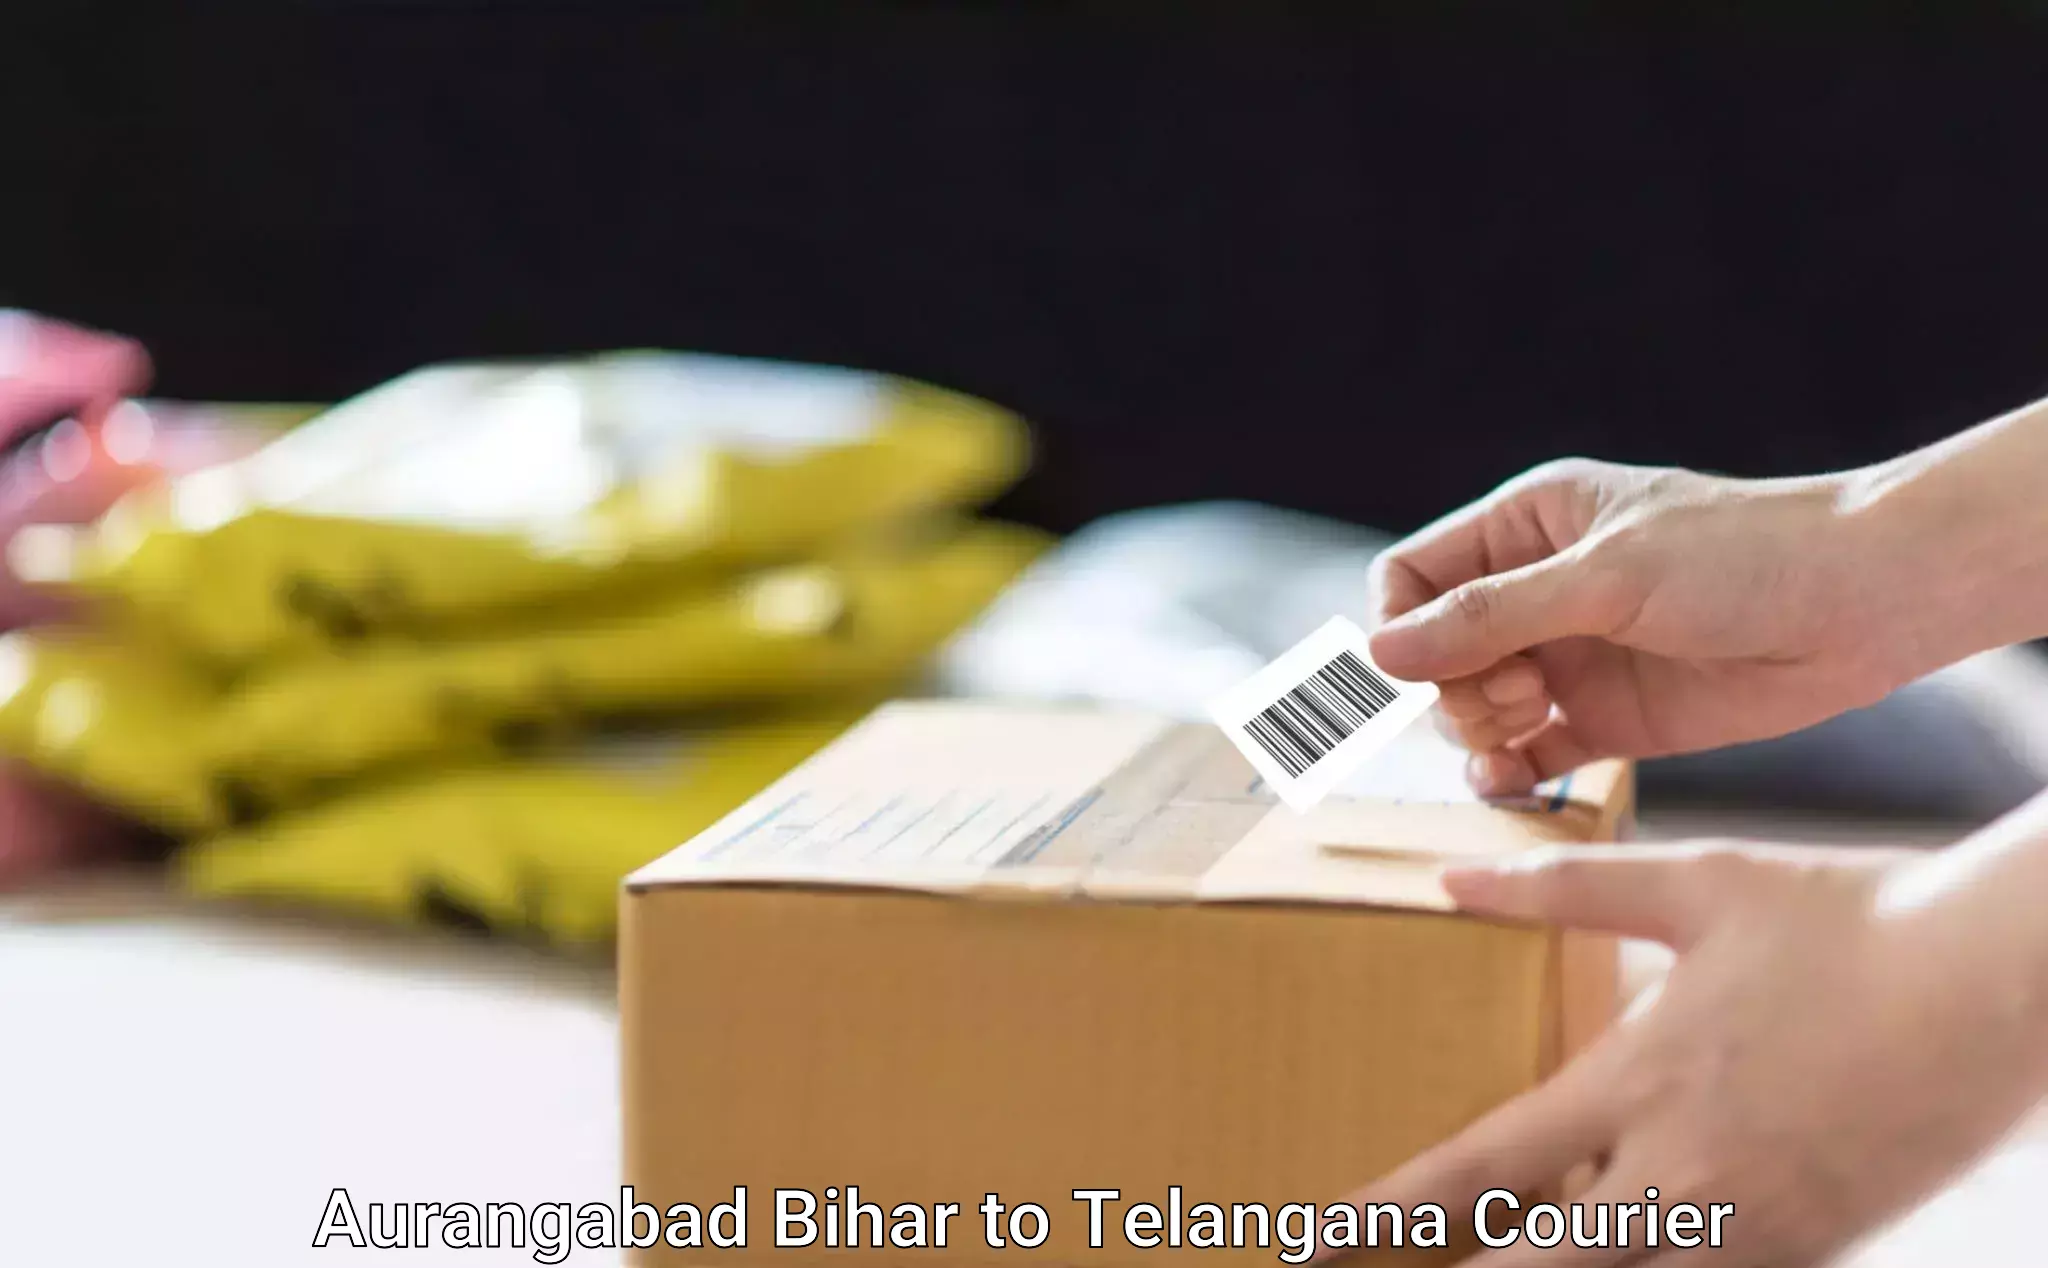 Specialized furniture moving Aurangabad Bihar to Telangana